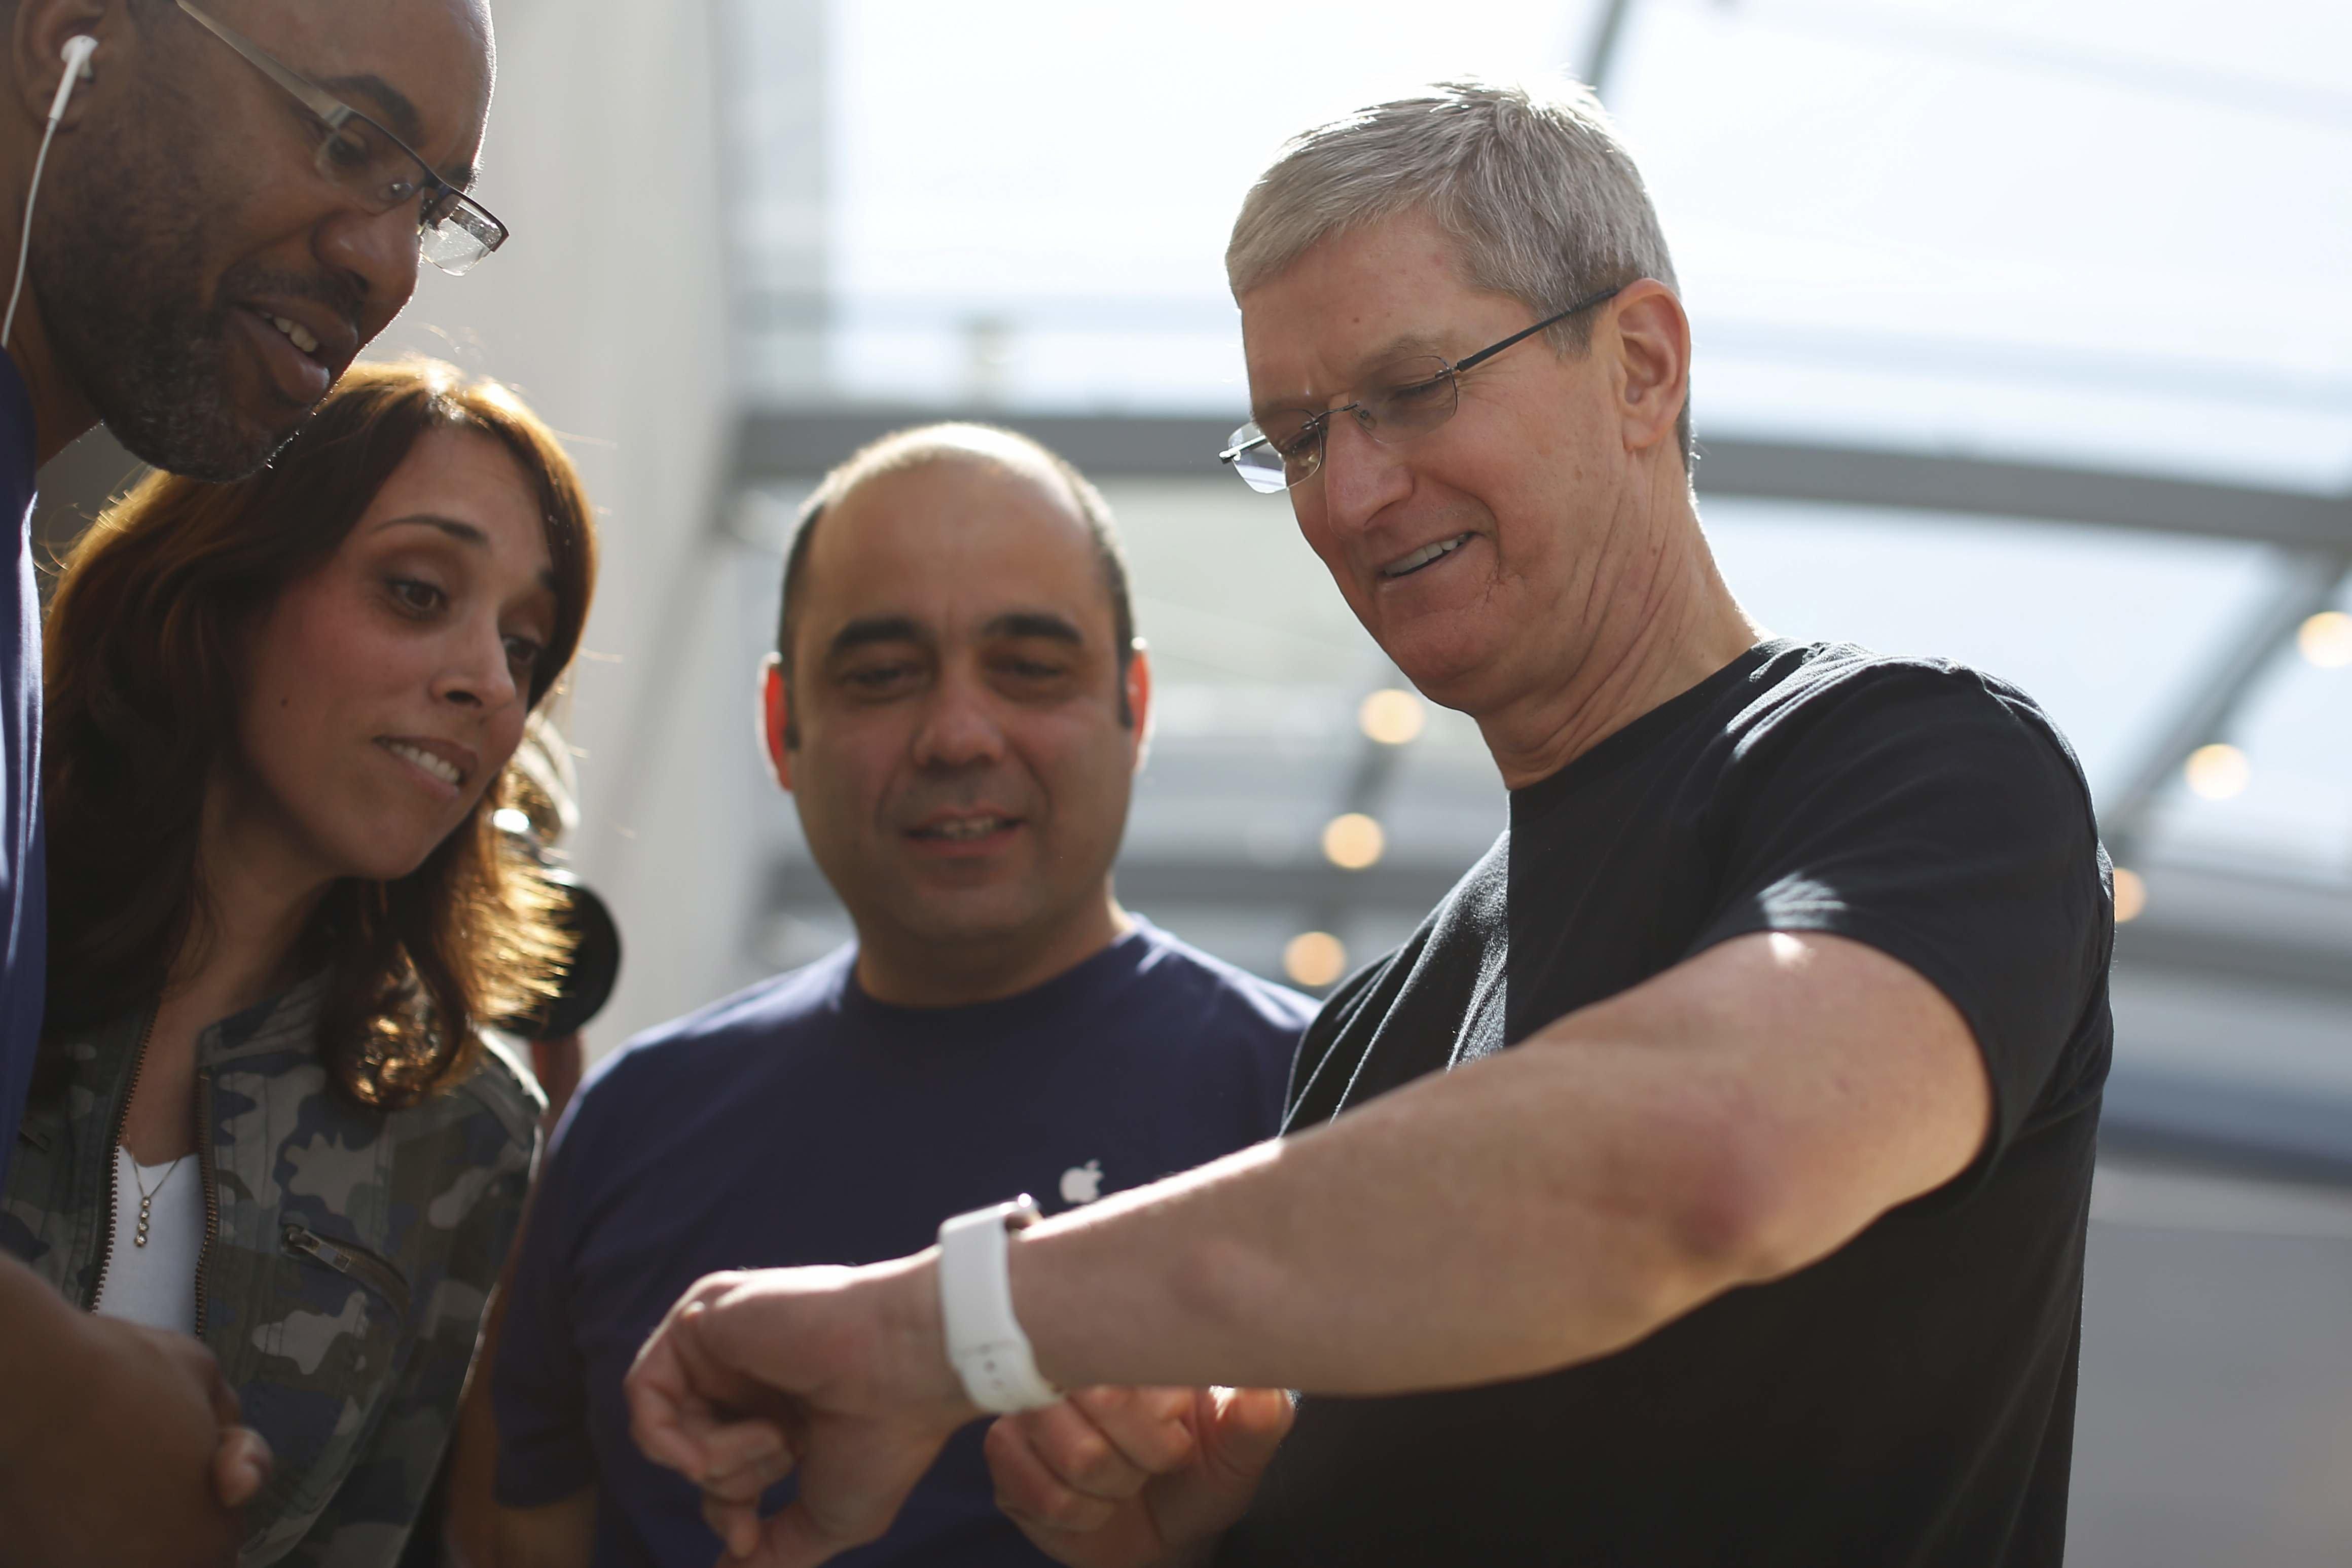 Appleın CEOsu Tim Cooktan çok konuşulacak sosyal medya açıklaması